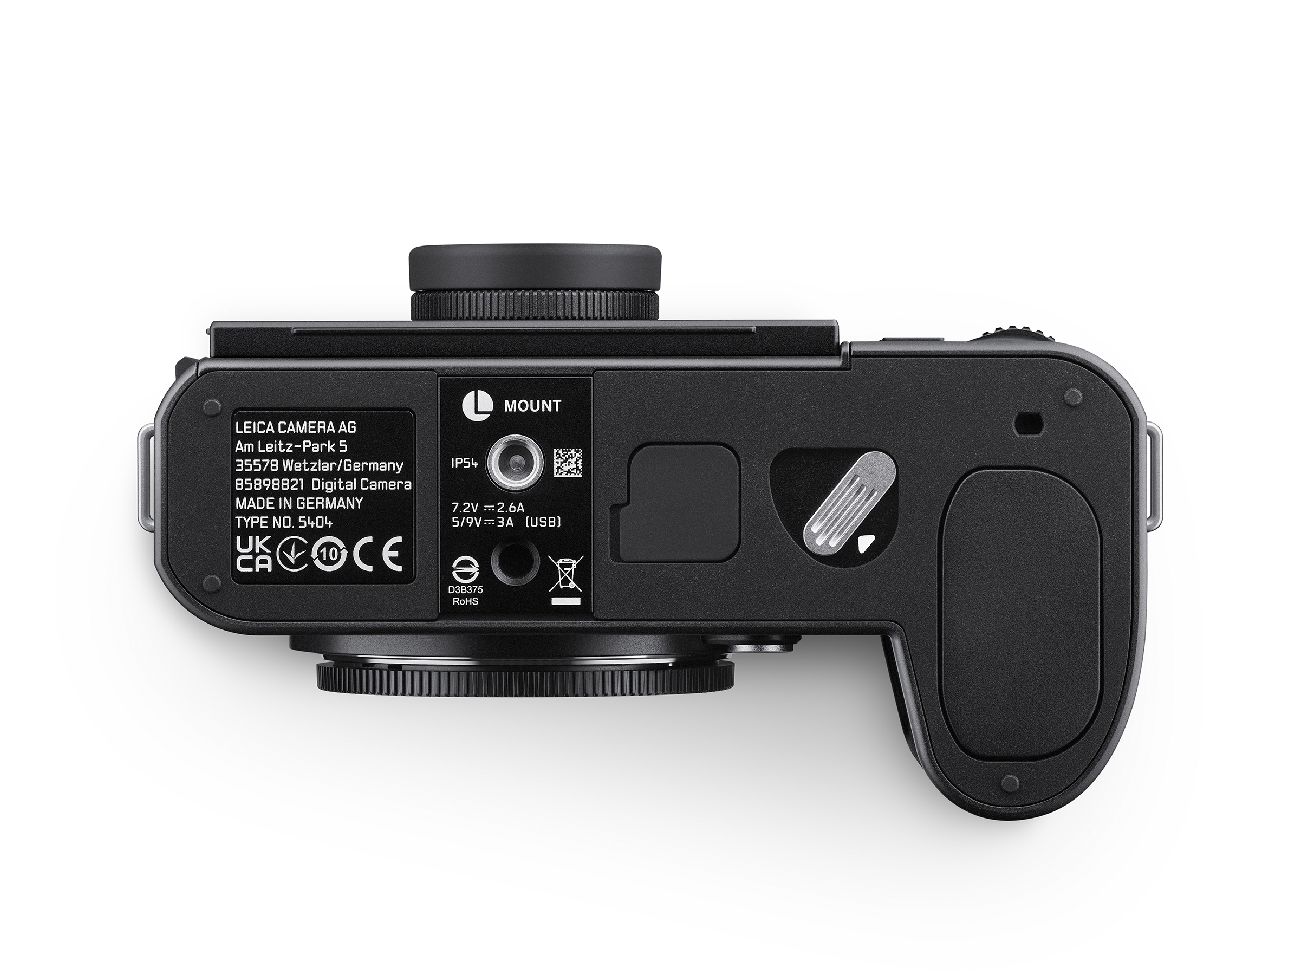 Leica SL3 Gehäuse, schwarz